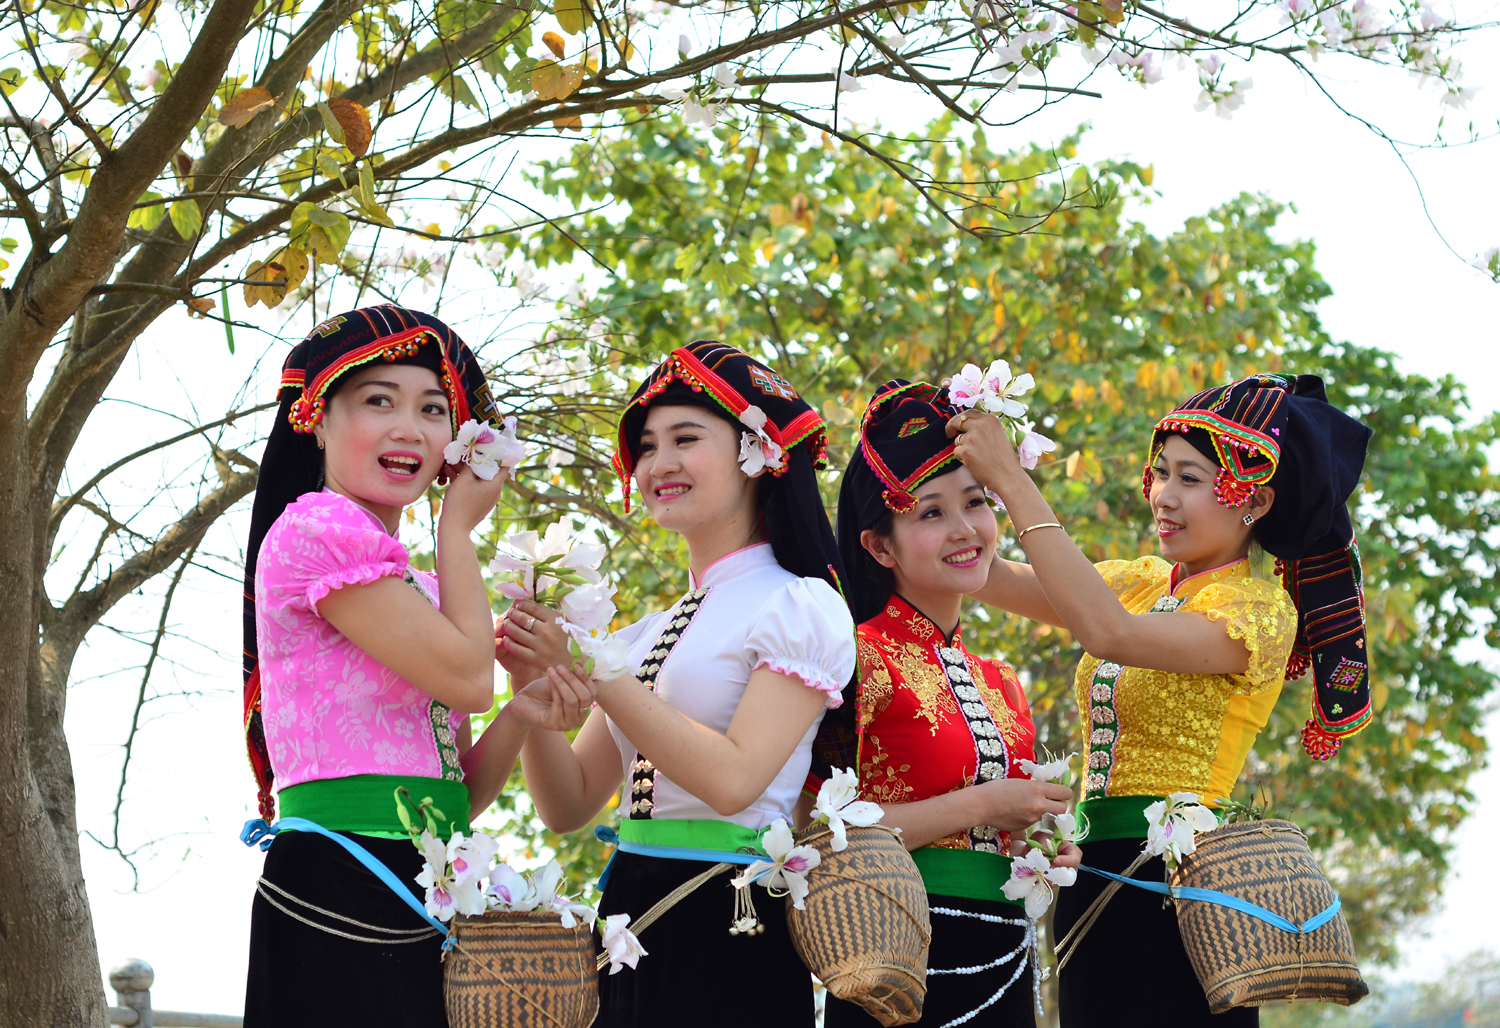 Đến với Tây Bắc, về với Điện Biên vào tháng 3 - mùa ban nở, du khách sẽ được hòa mình trong không gian lễ hội đậm đà bản sắc dân tộc.